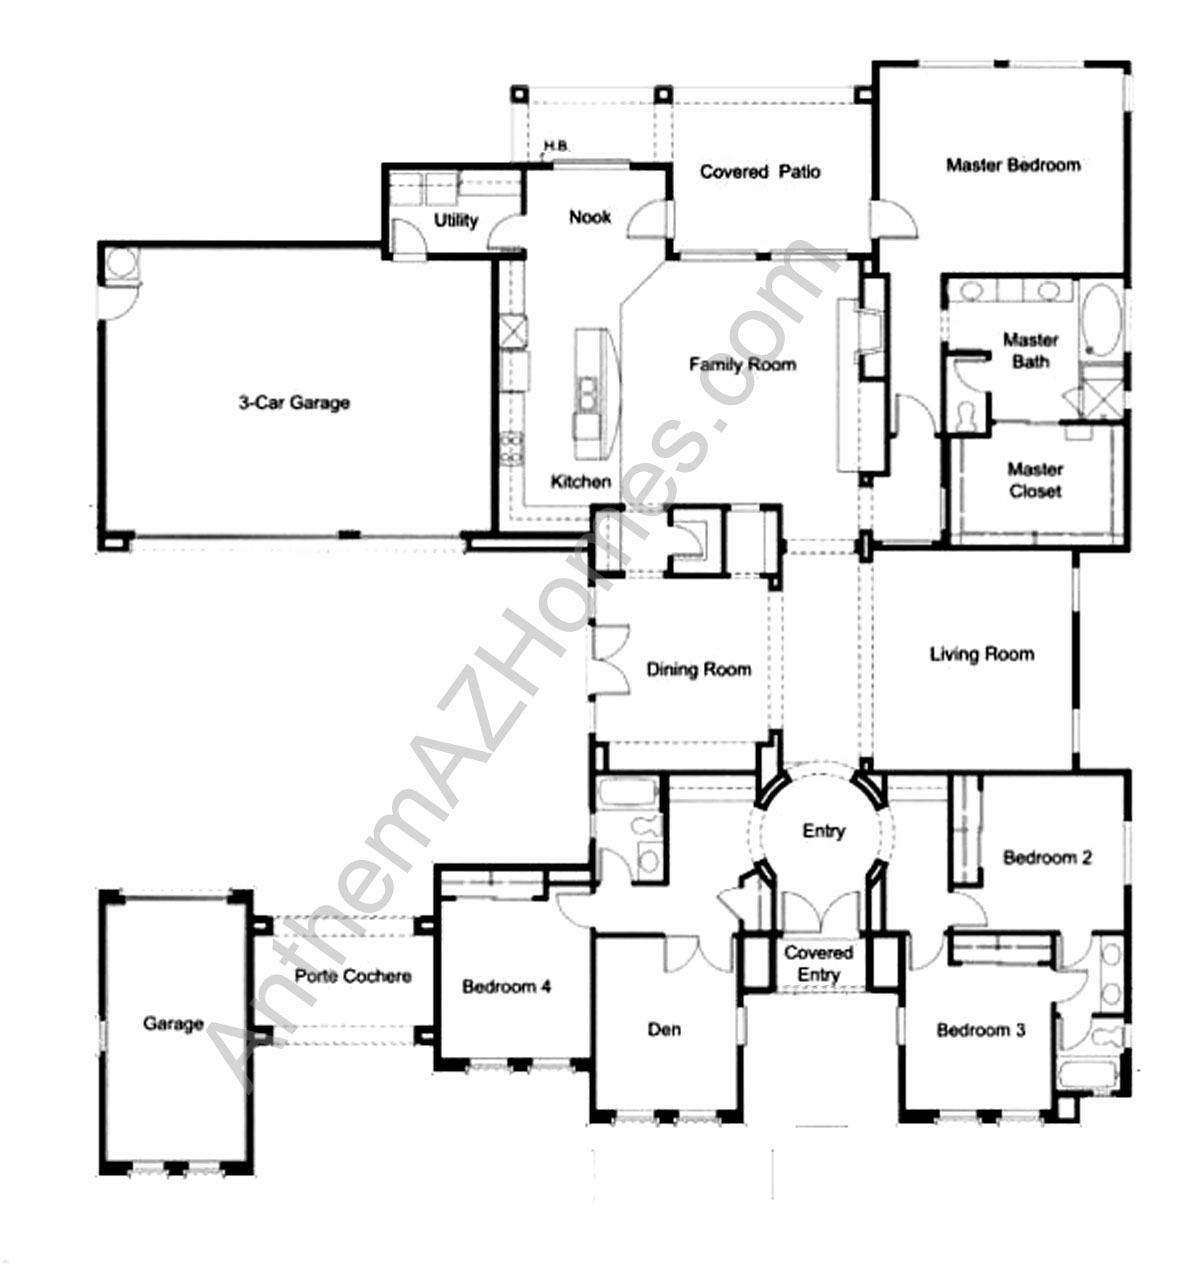 Pulte Home Floor Plans In Arizona